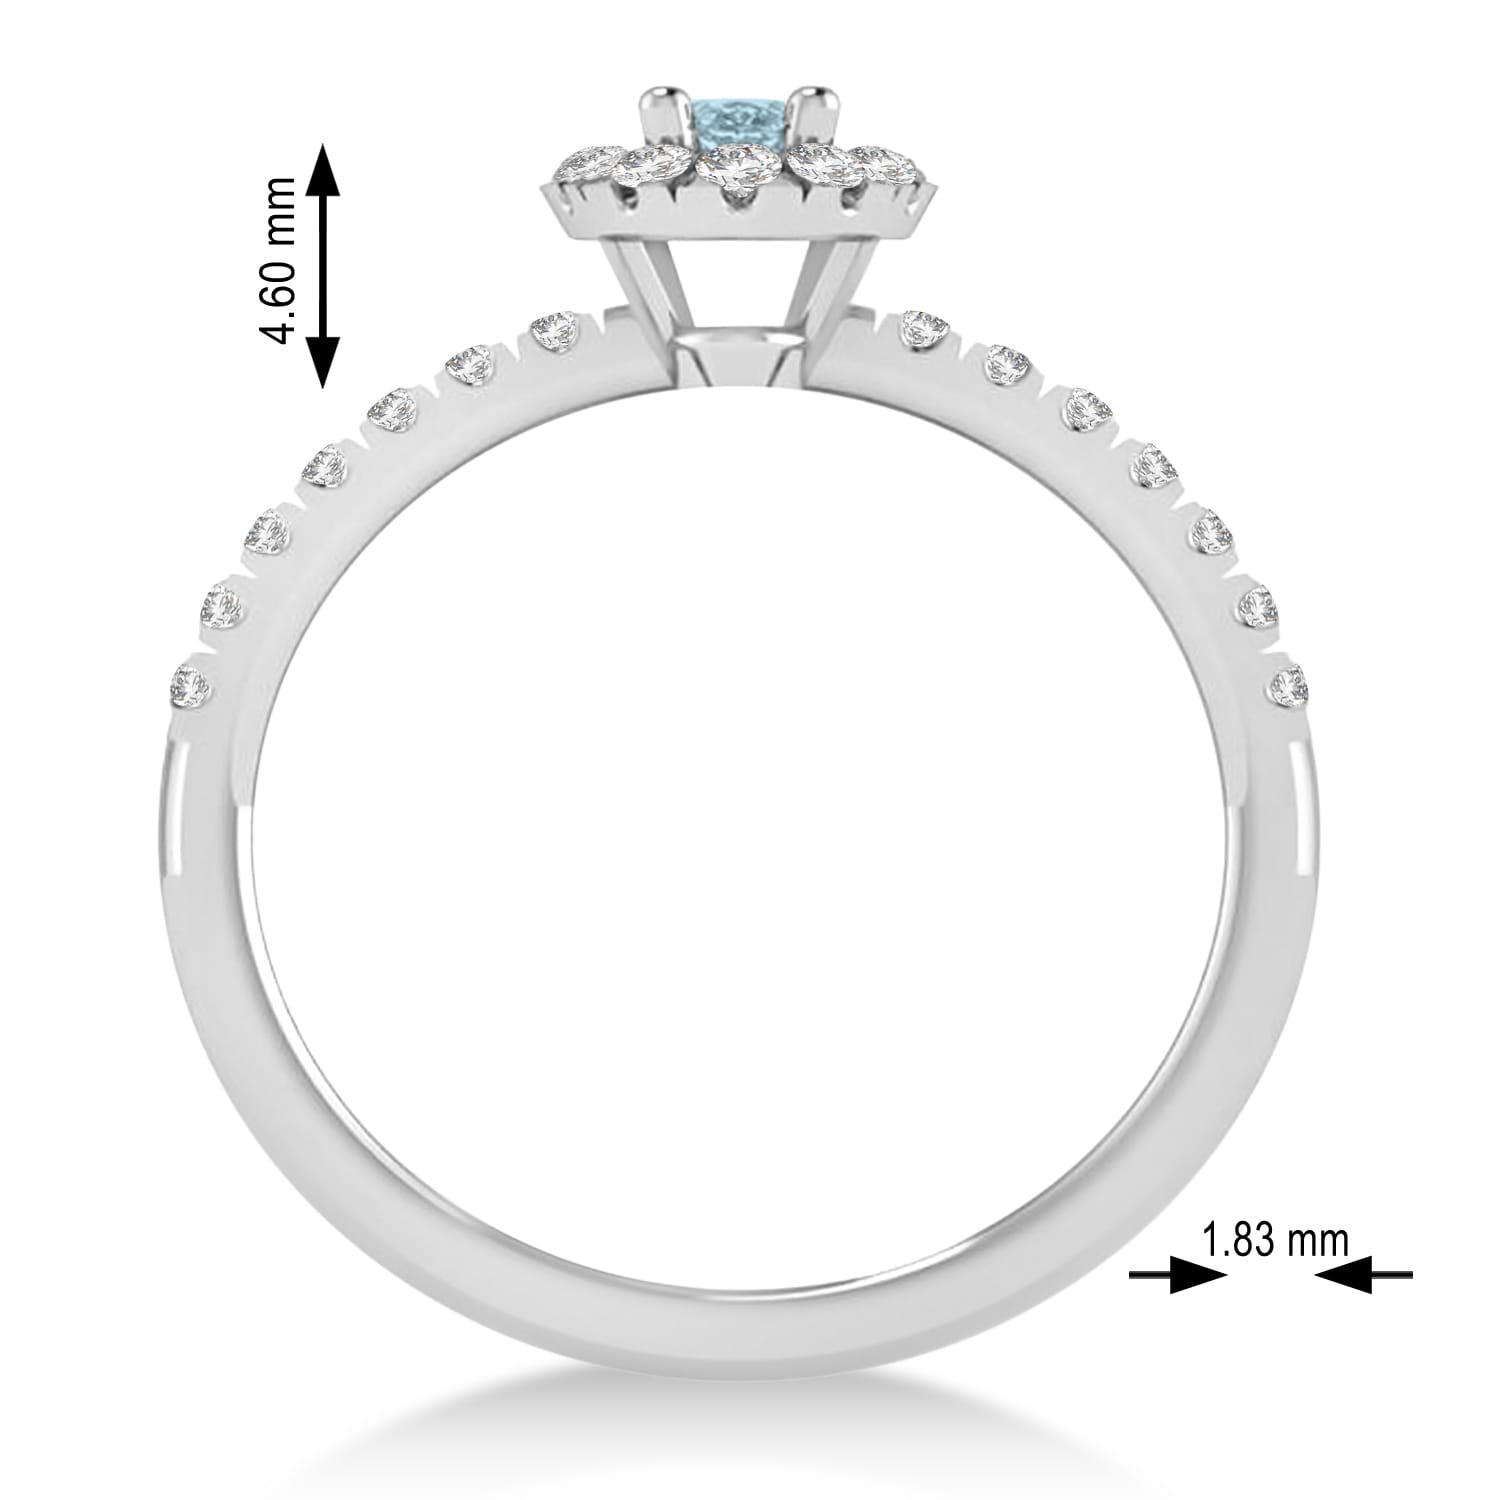 Oval Aquamarine & Diamond Halo Engagement Ring 14k White Gold (0.60ct)